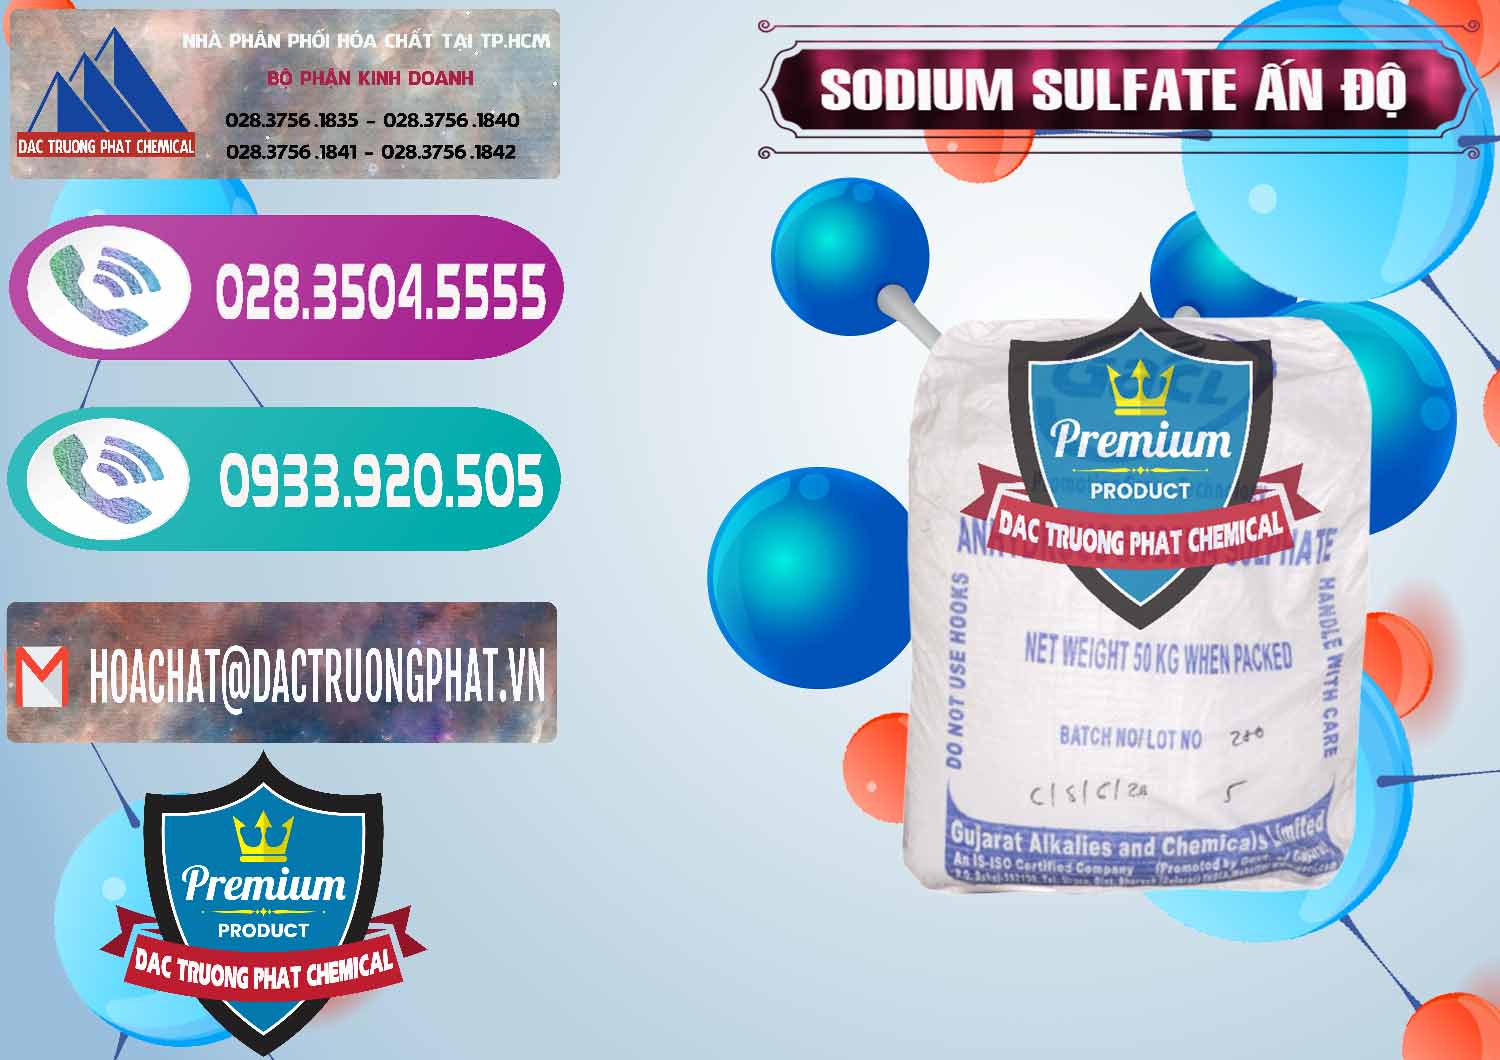 Cty chuyên bán - phân phối Sodium Sulphate - Muối Sunfat Na2SO4 GACL Ấn Độ India - 0461 - Đơn vị nhập khẩu và phân phối hóa chất tại TP.HCM - hoachatxulynuoc.com